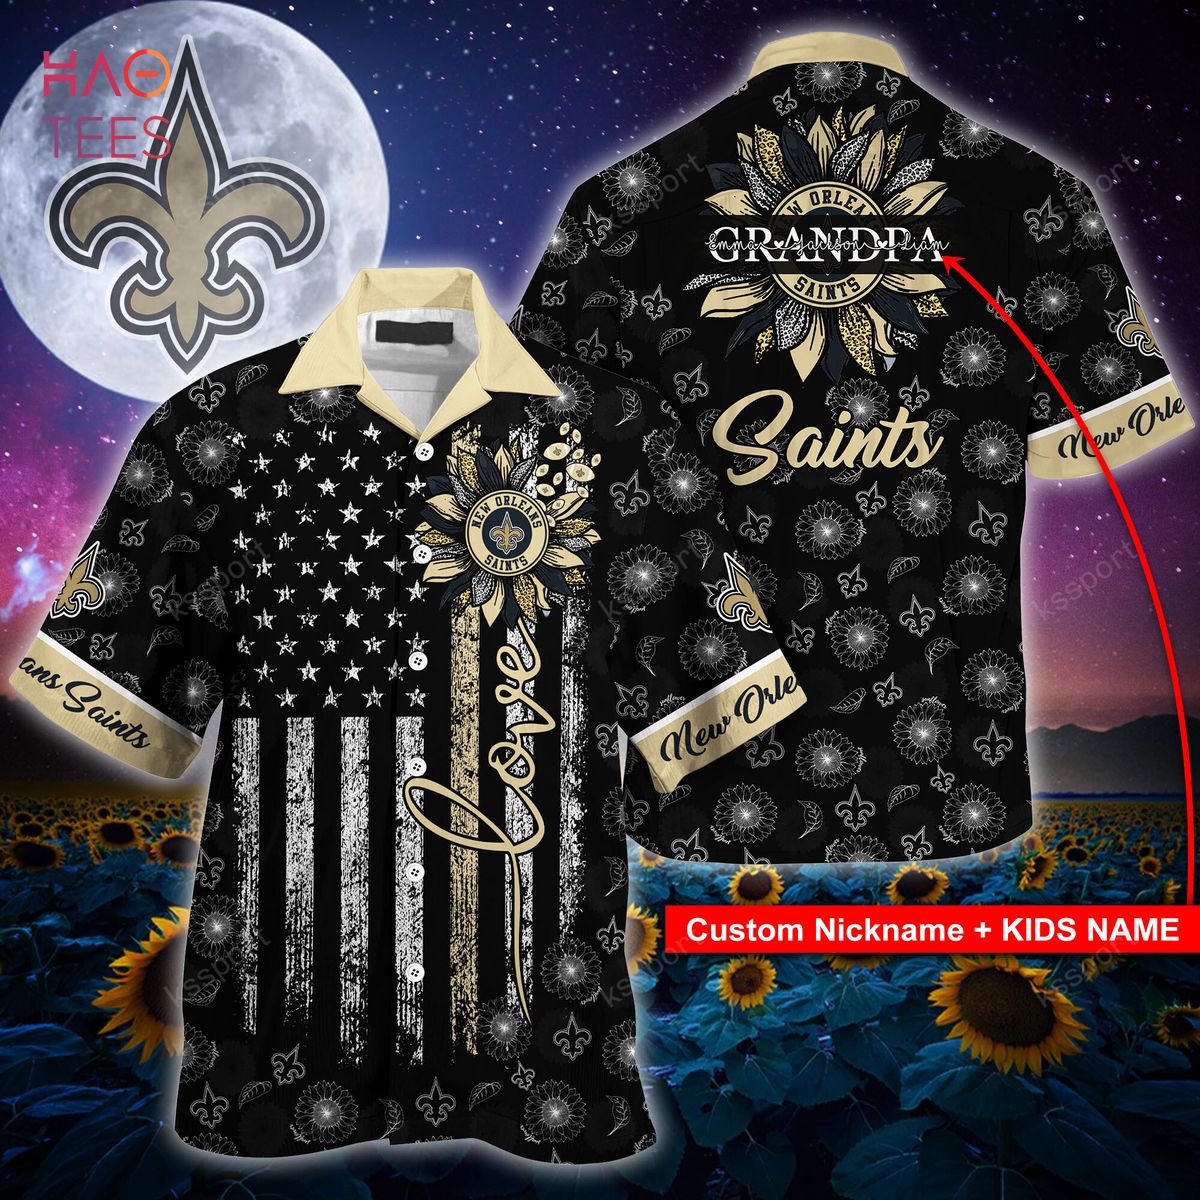 [Available] New Orleans Saints NFL Hawaiian Shirt